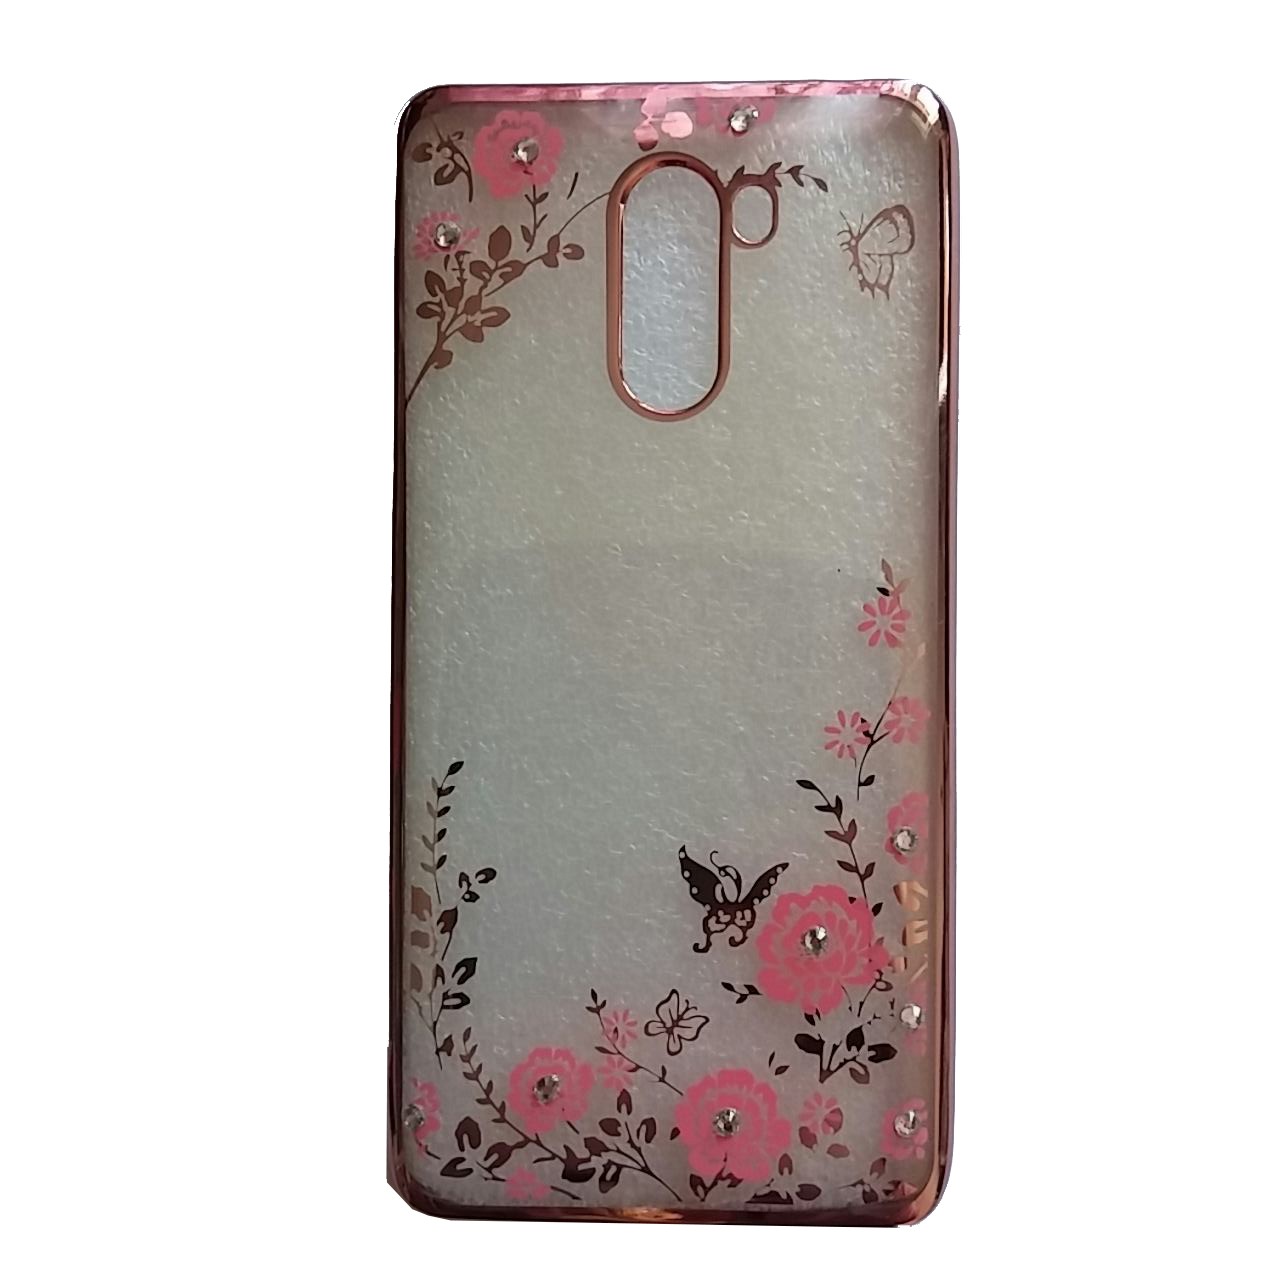 Θήκη Προστασίας Σιλικόνης Xiaomi Redmi 4 16GB - Back Cover Silicone Case - Rose Flowers